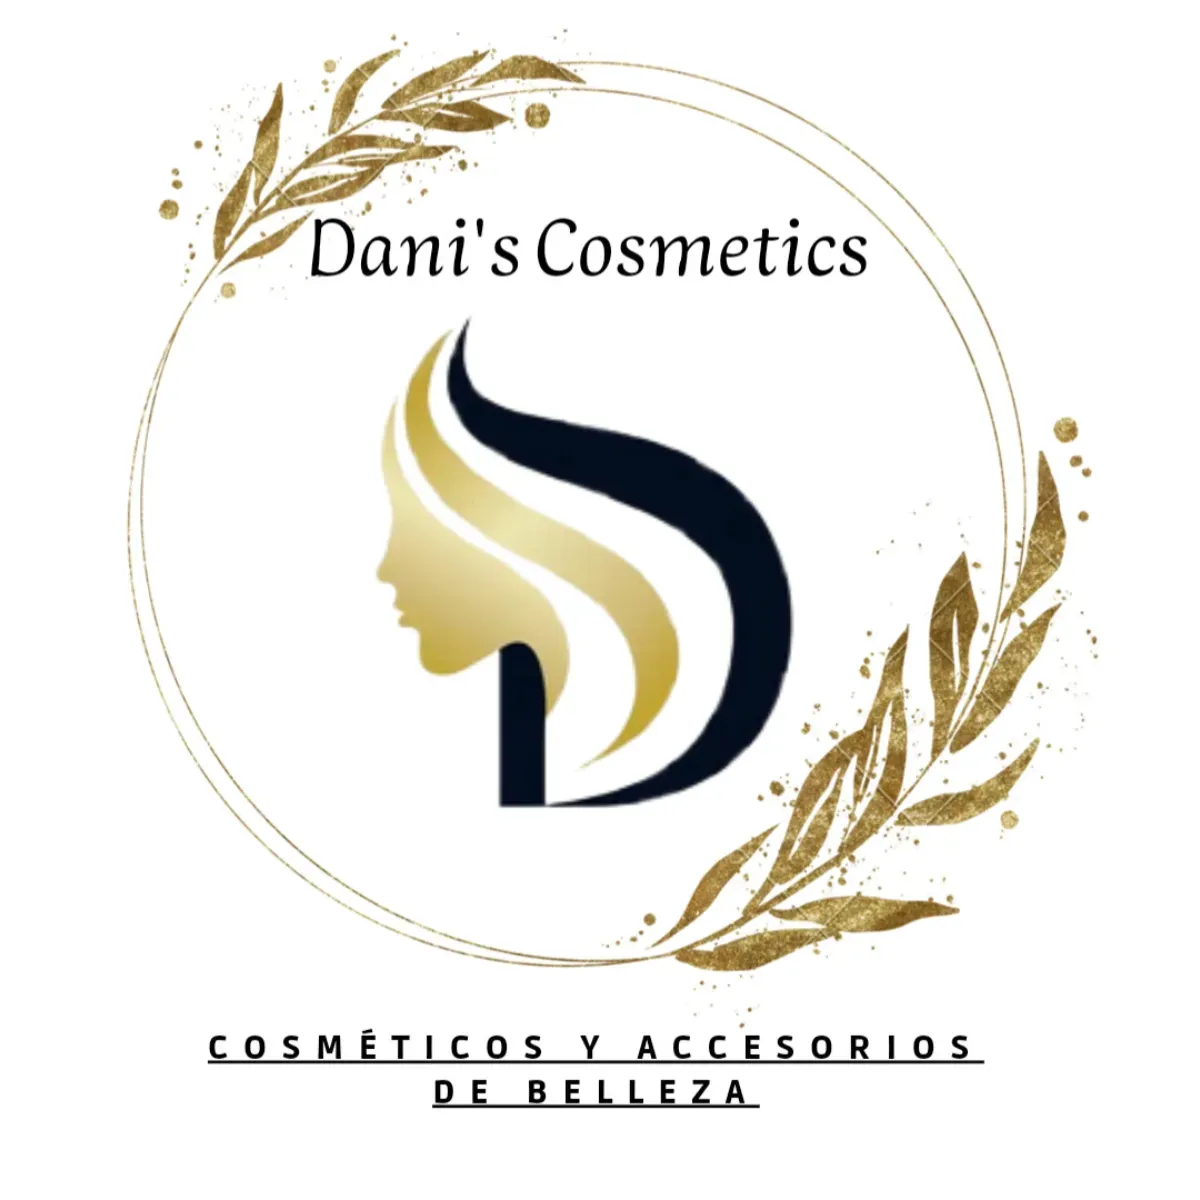 Discos desmaquillantes 100u, Aplicadores y Algodones - Dani's Cosmetics